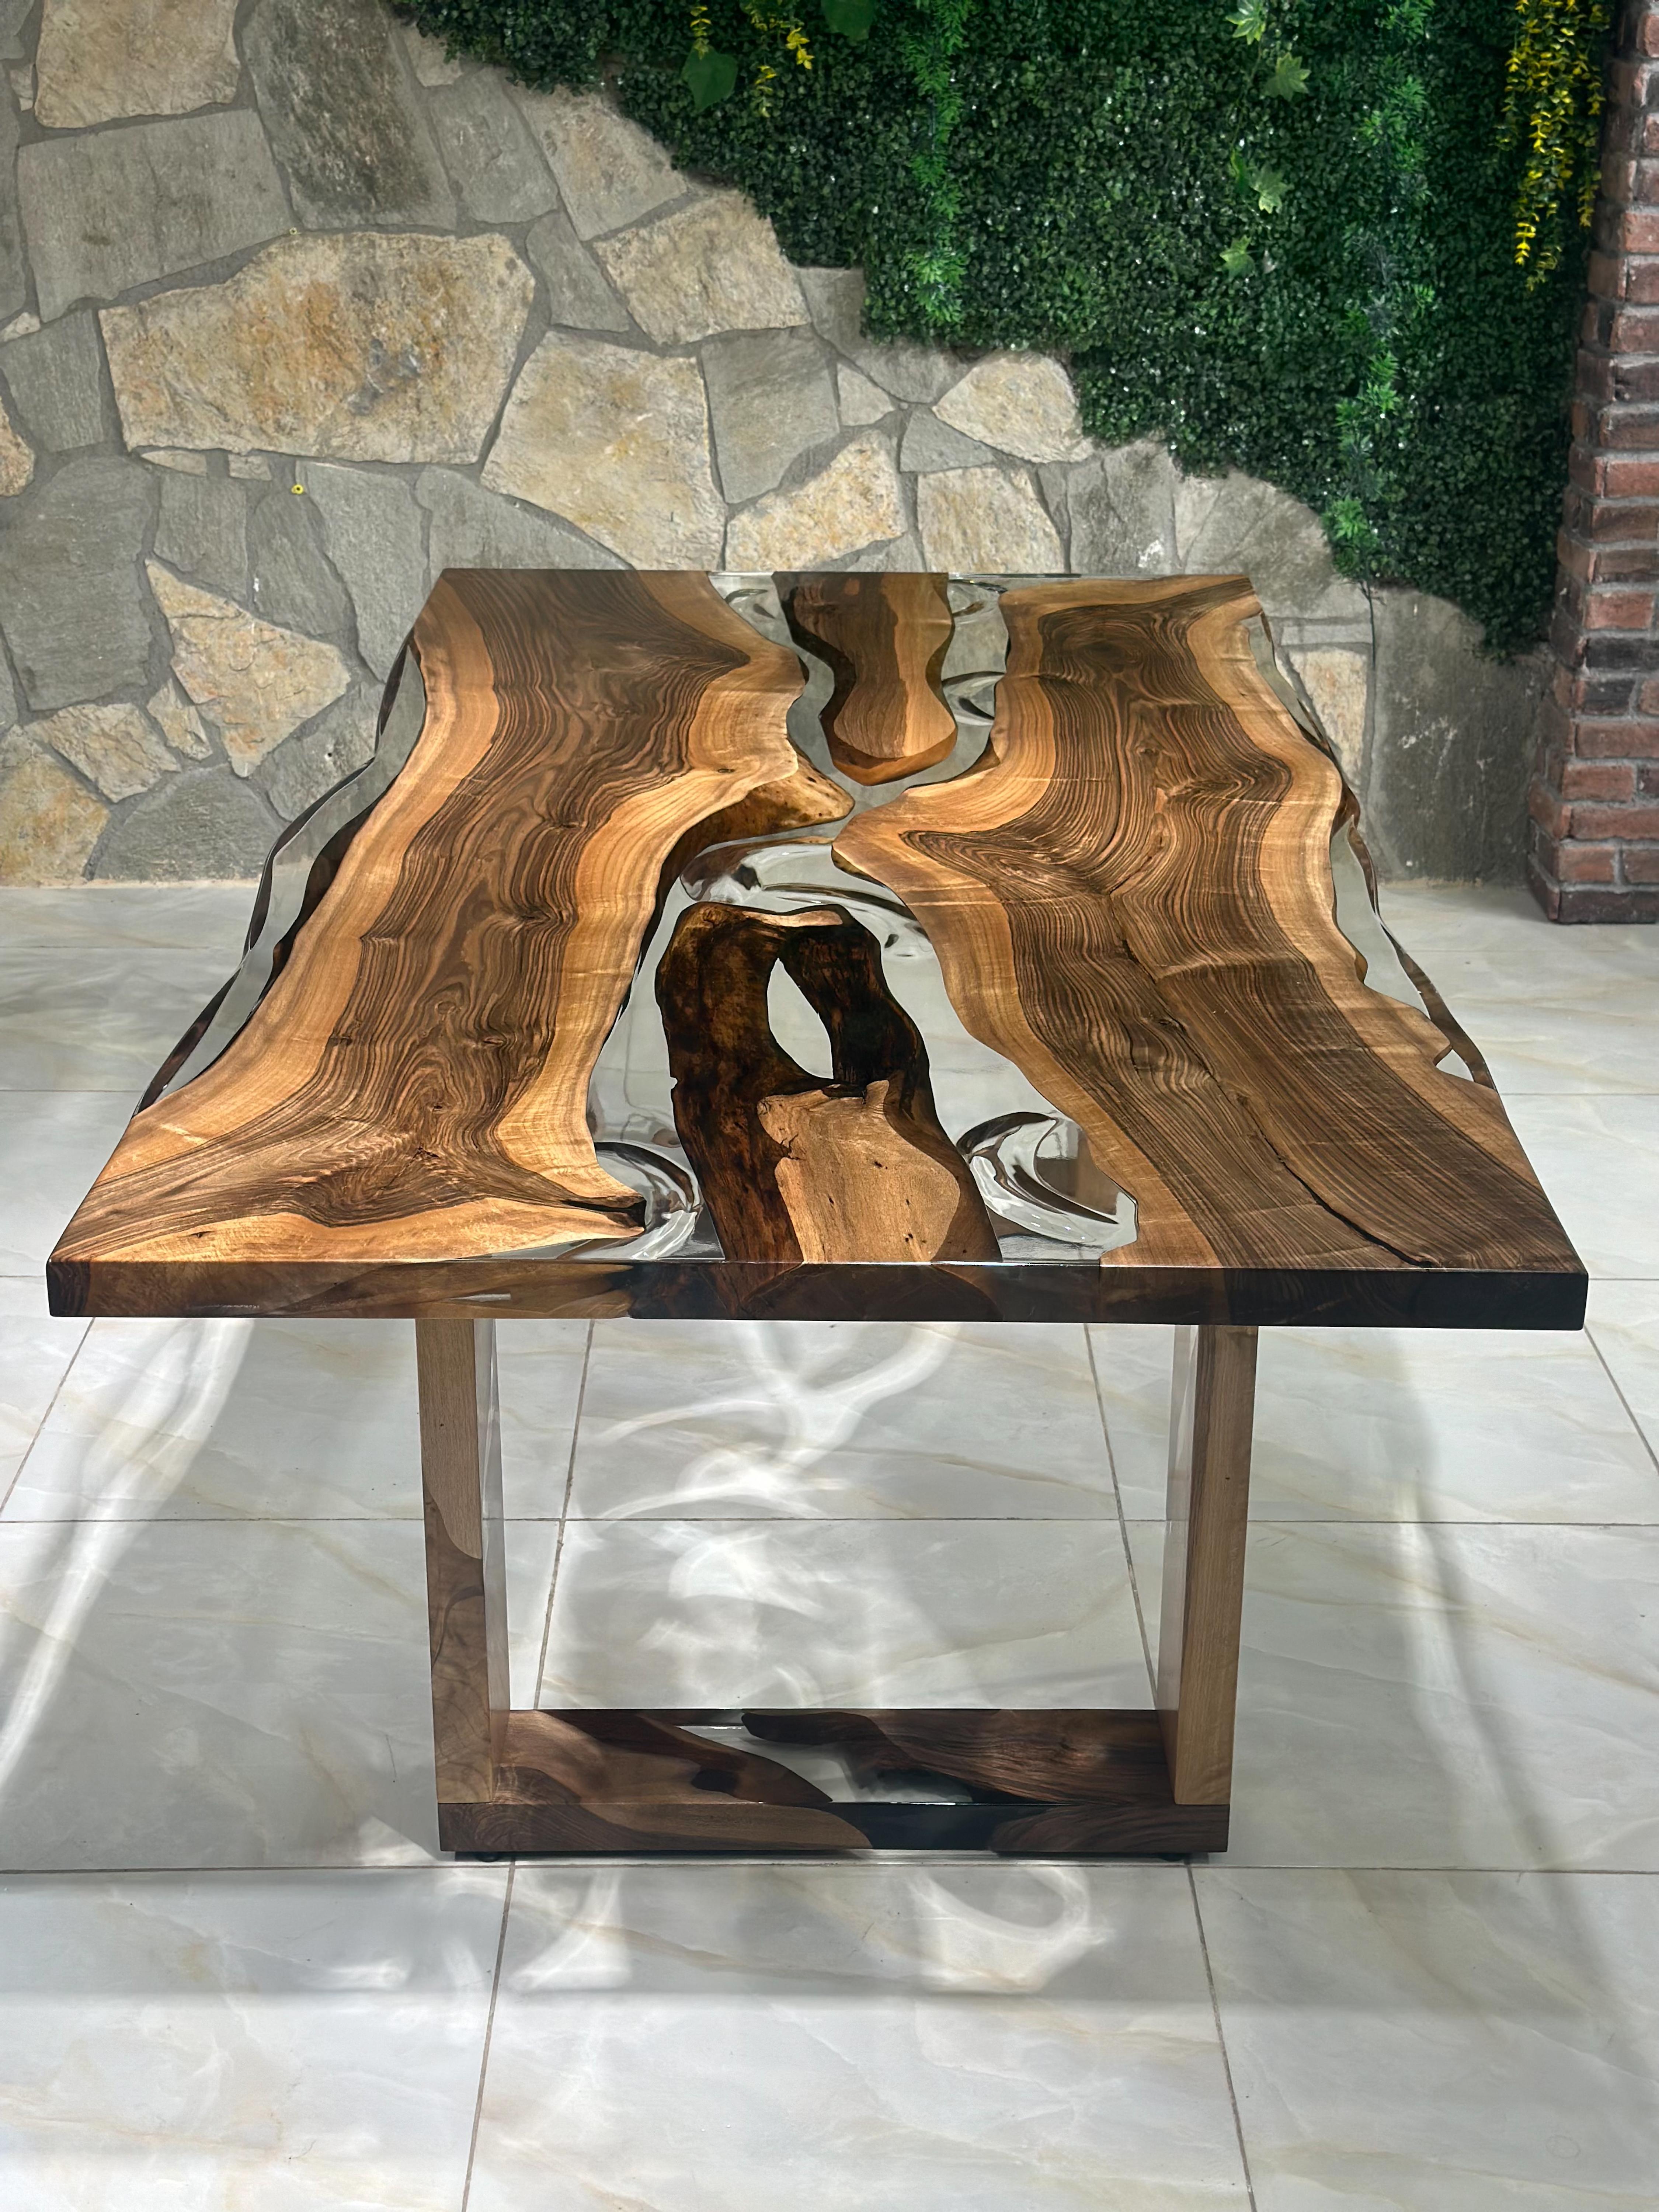 Table en bois de noyer et époxy transparent - Des dimensions sur mesure sont disponibles !

Cette table combine harmonieusement la chaleur du bois de noyer et la touche moderne de l'époxy transparent. C'est une pièce maîtresse magnifique pour